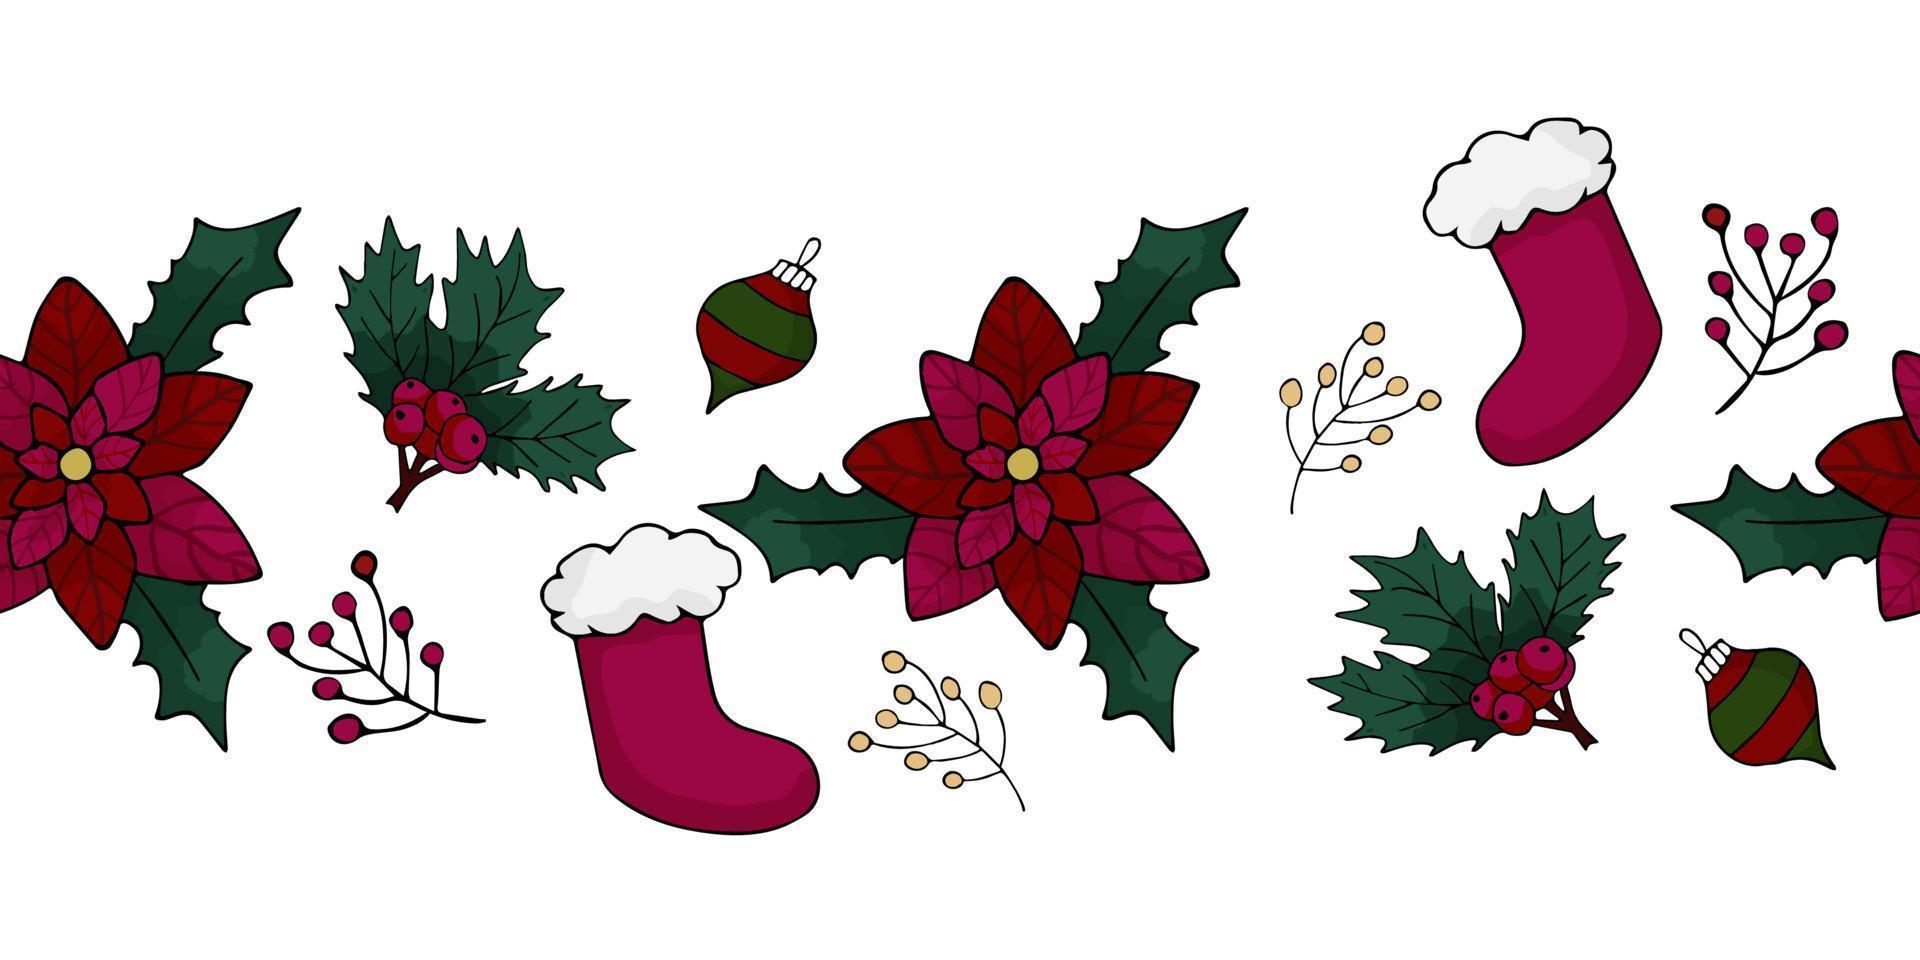 Kerstmis decoratie met hulst bessen.vrolijk kerst.naadloos grens met tekenfilm decoraties. vector illustratie. hand- trek stijl.